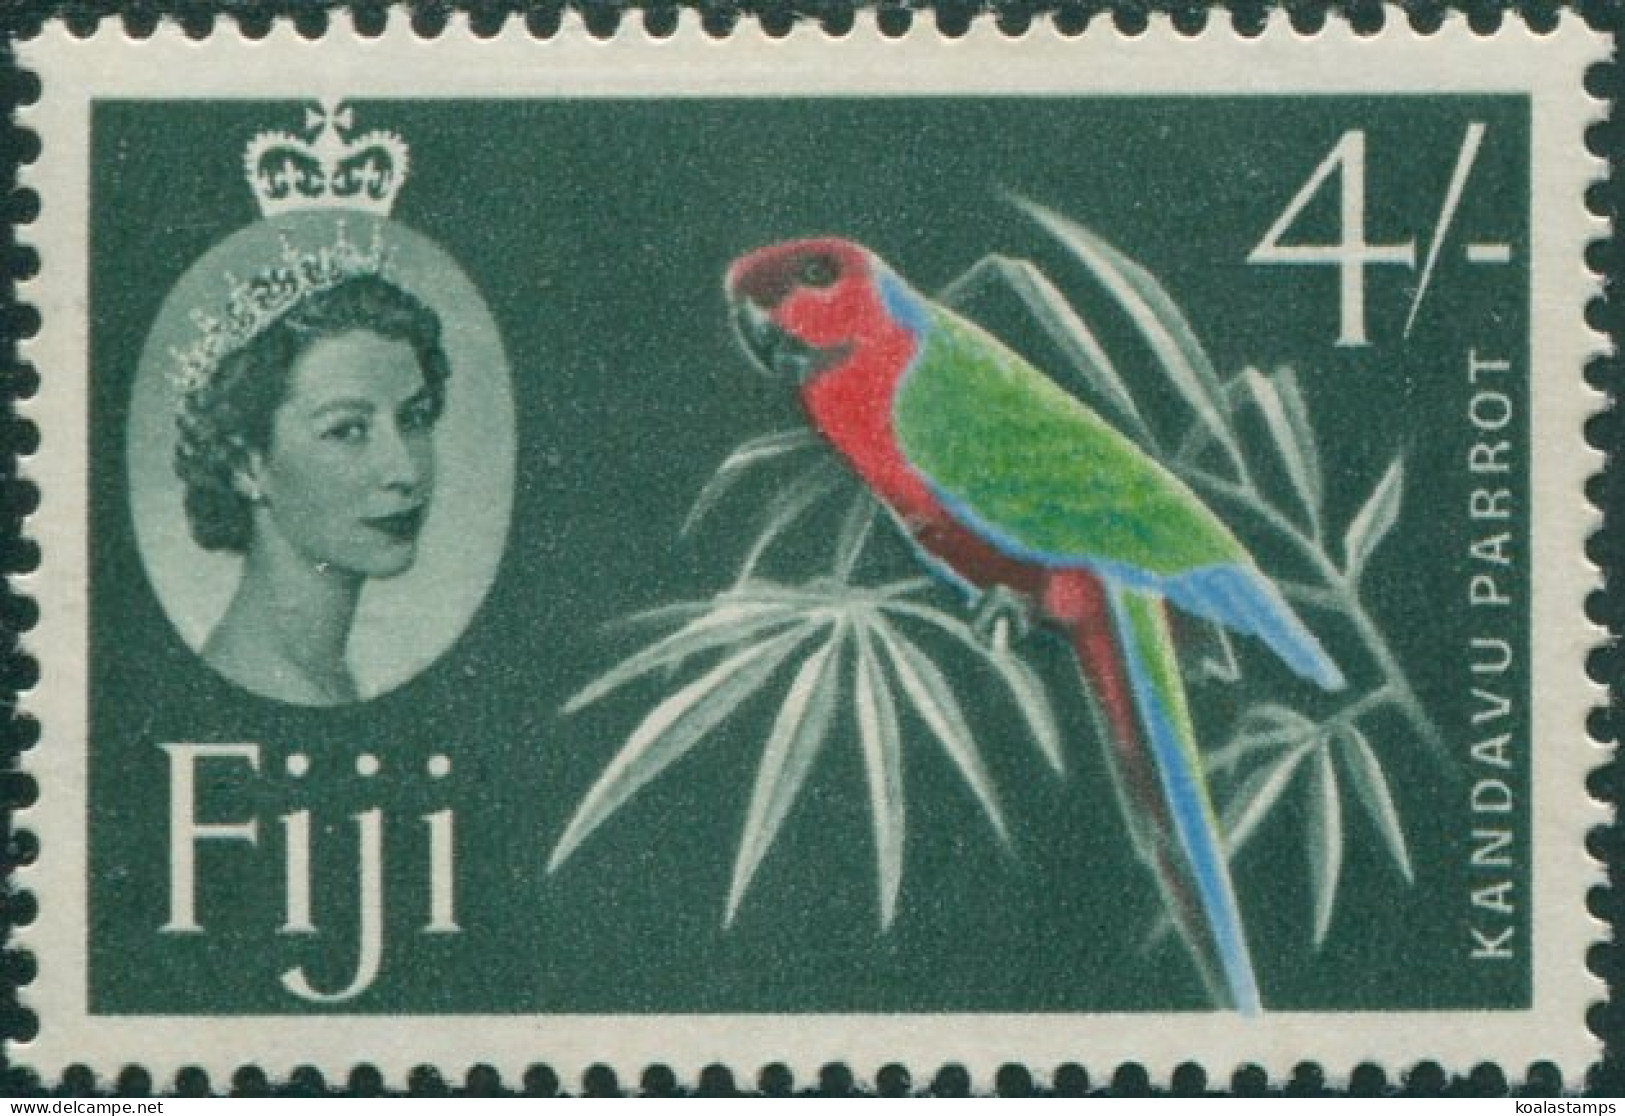 Fiji 1962 SG322 4/- Slate-green Red Shining Parrot Green QEII MNH - Fiji (1970-...)